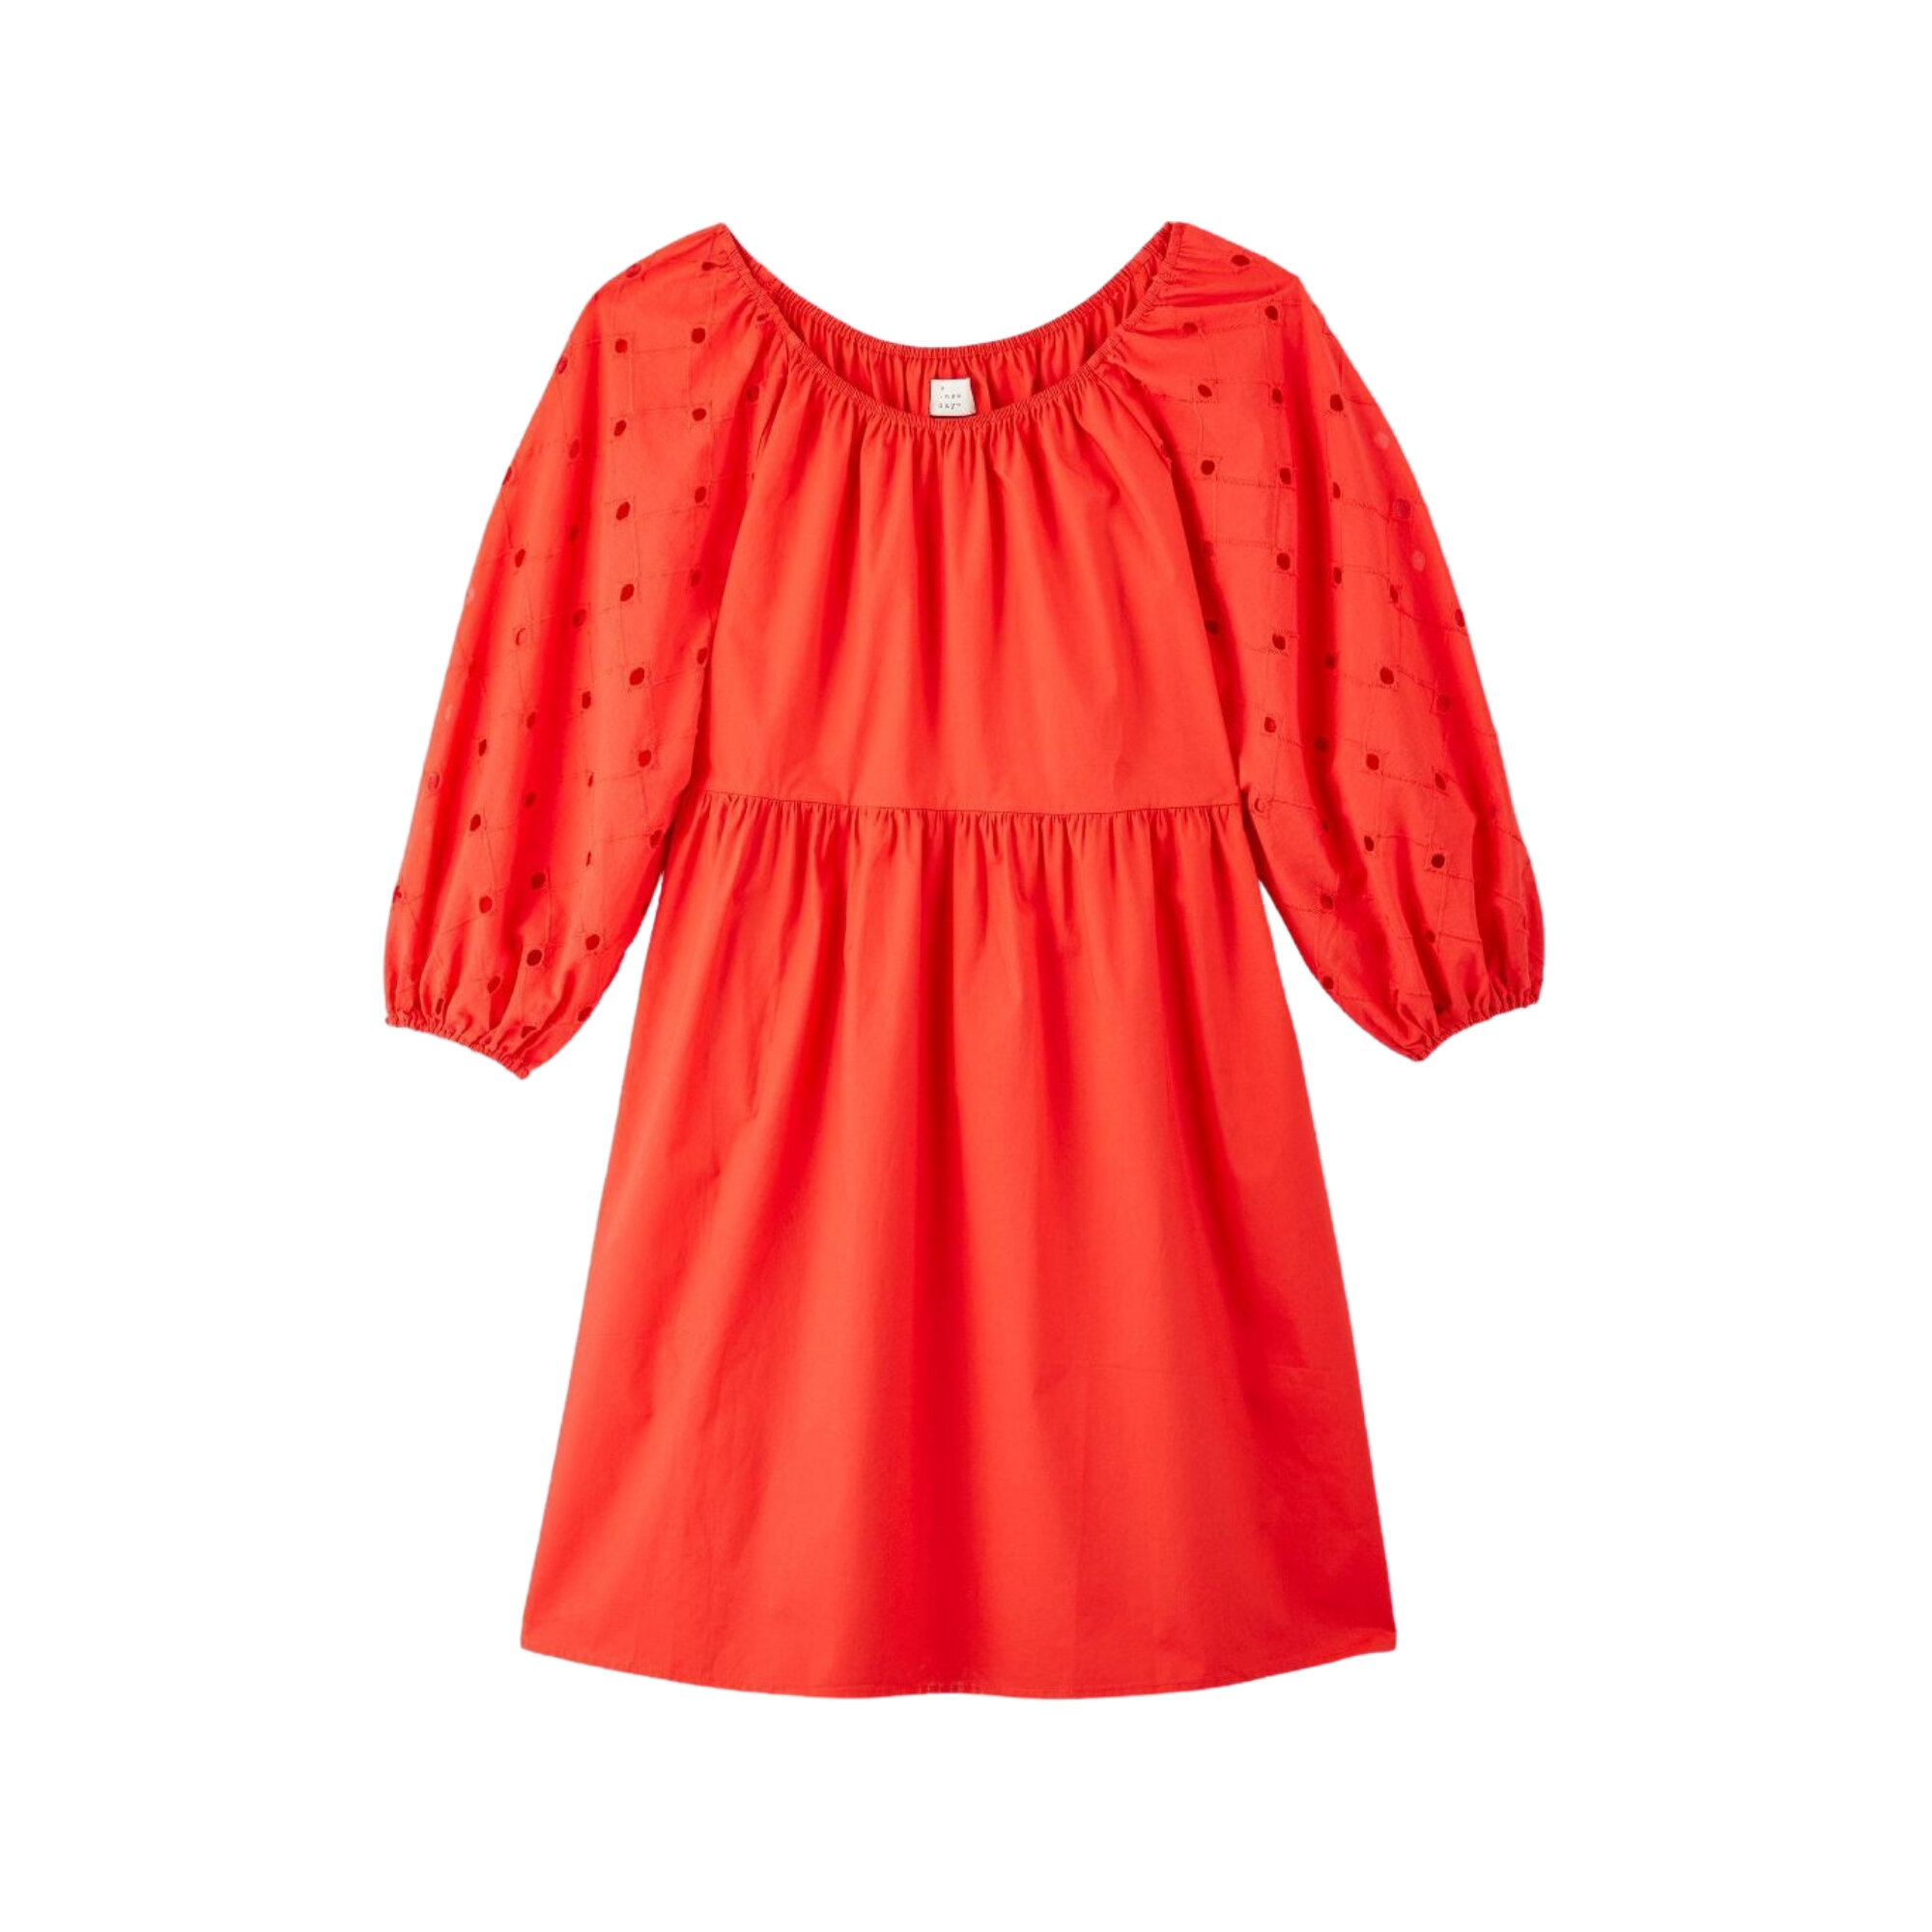 Eyelet Babydoll Dress, Target, $27.99 (machine wash)